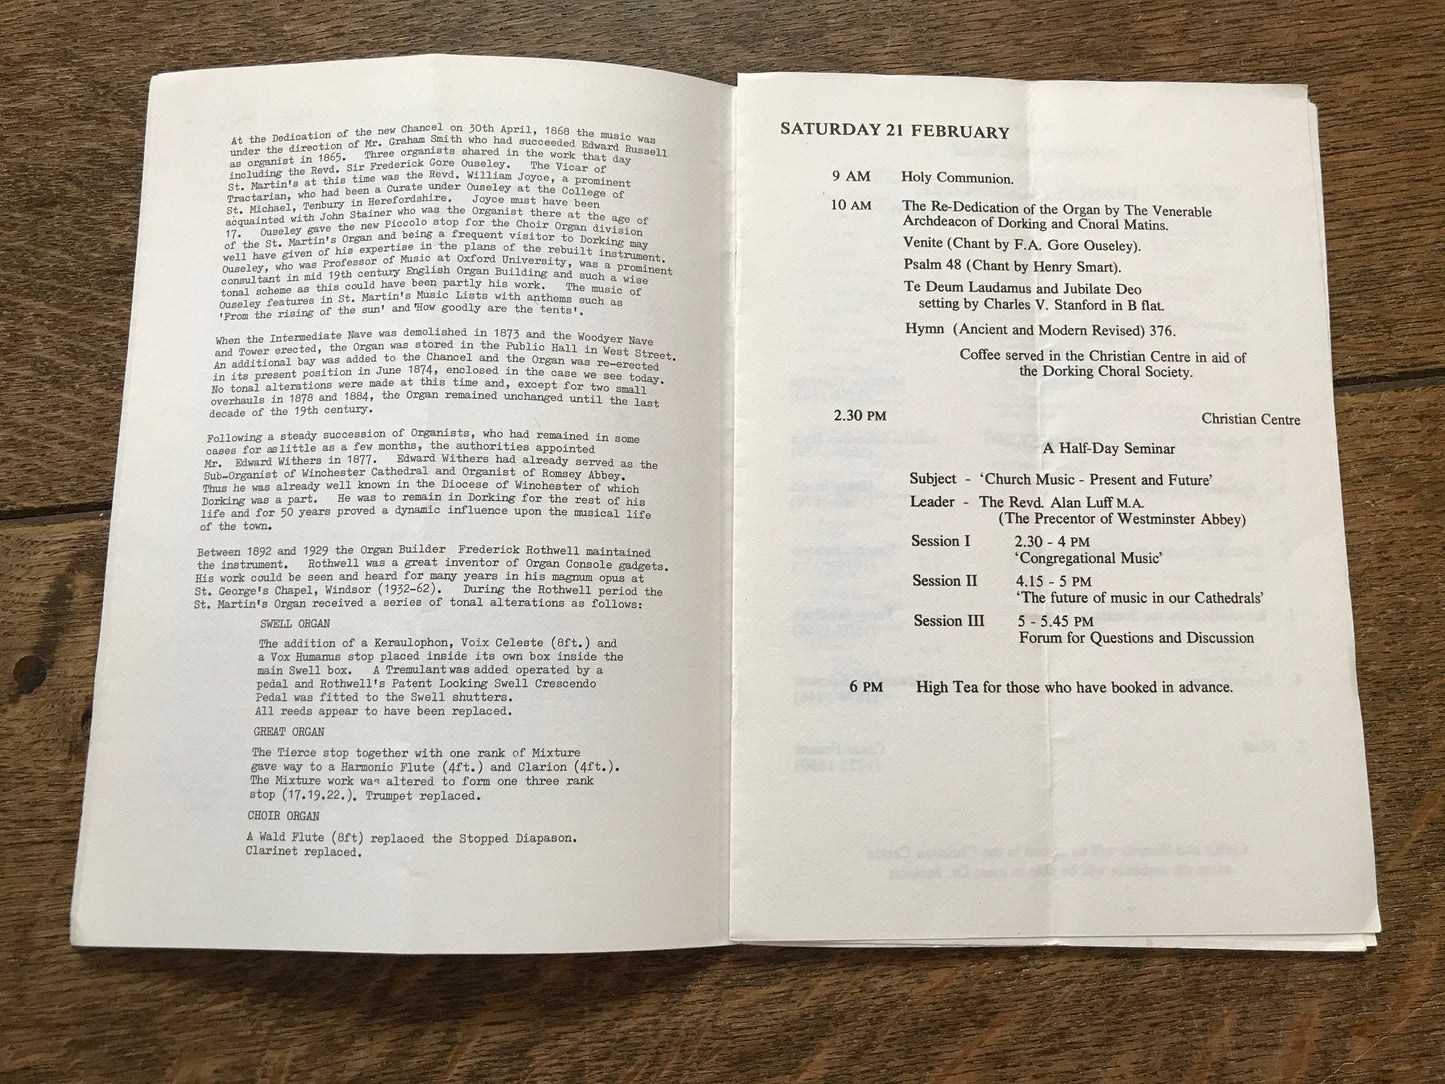 St. Martin's Church - Festival Weekend Programme - 1987